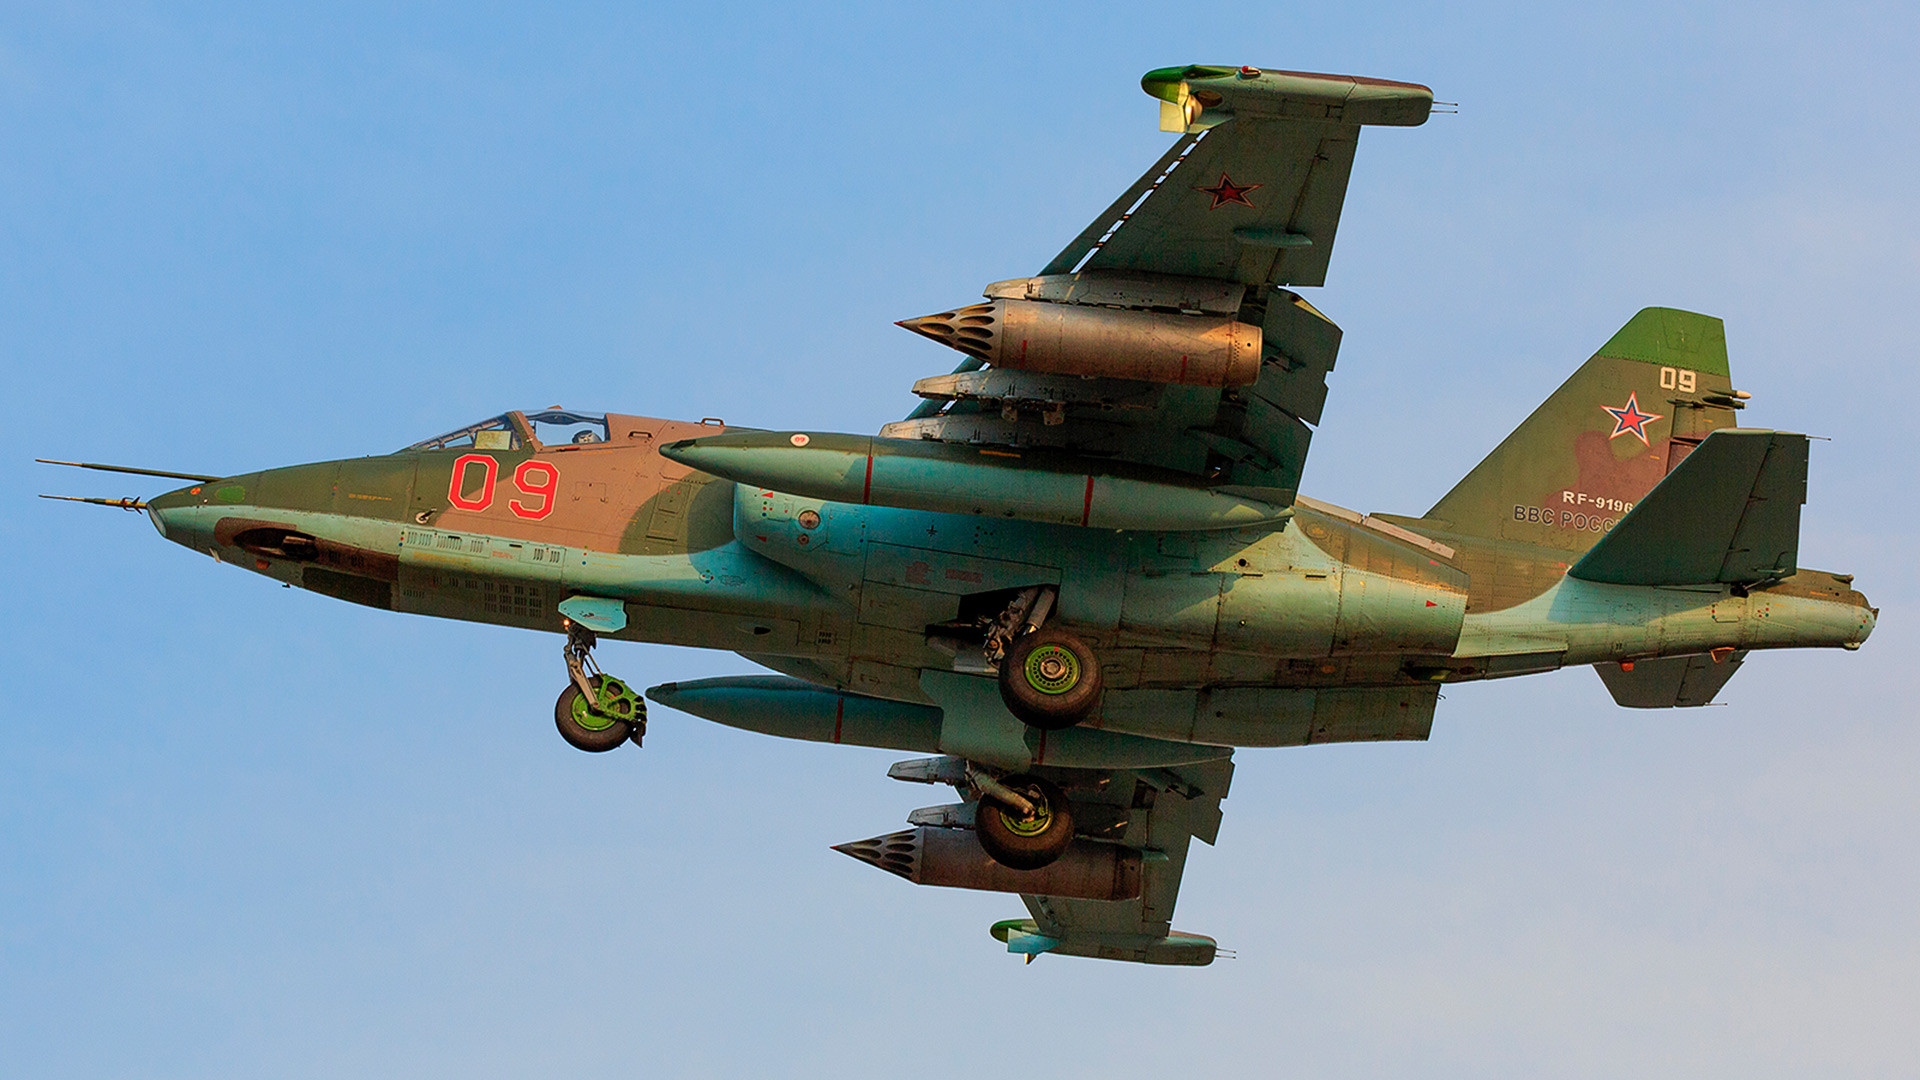 Su-25

